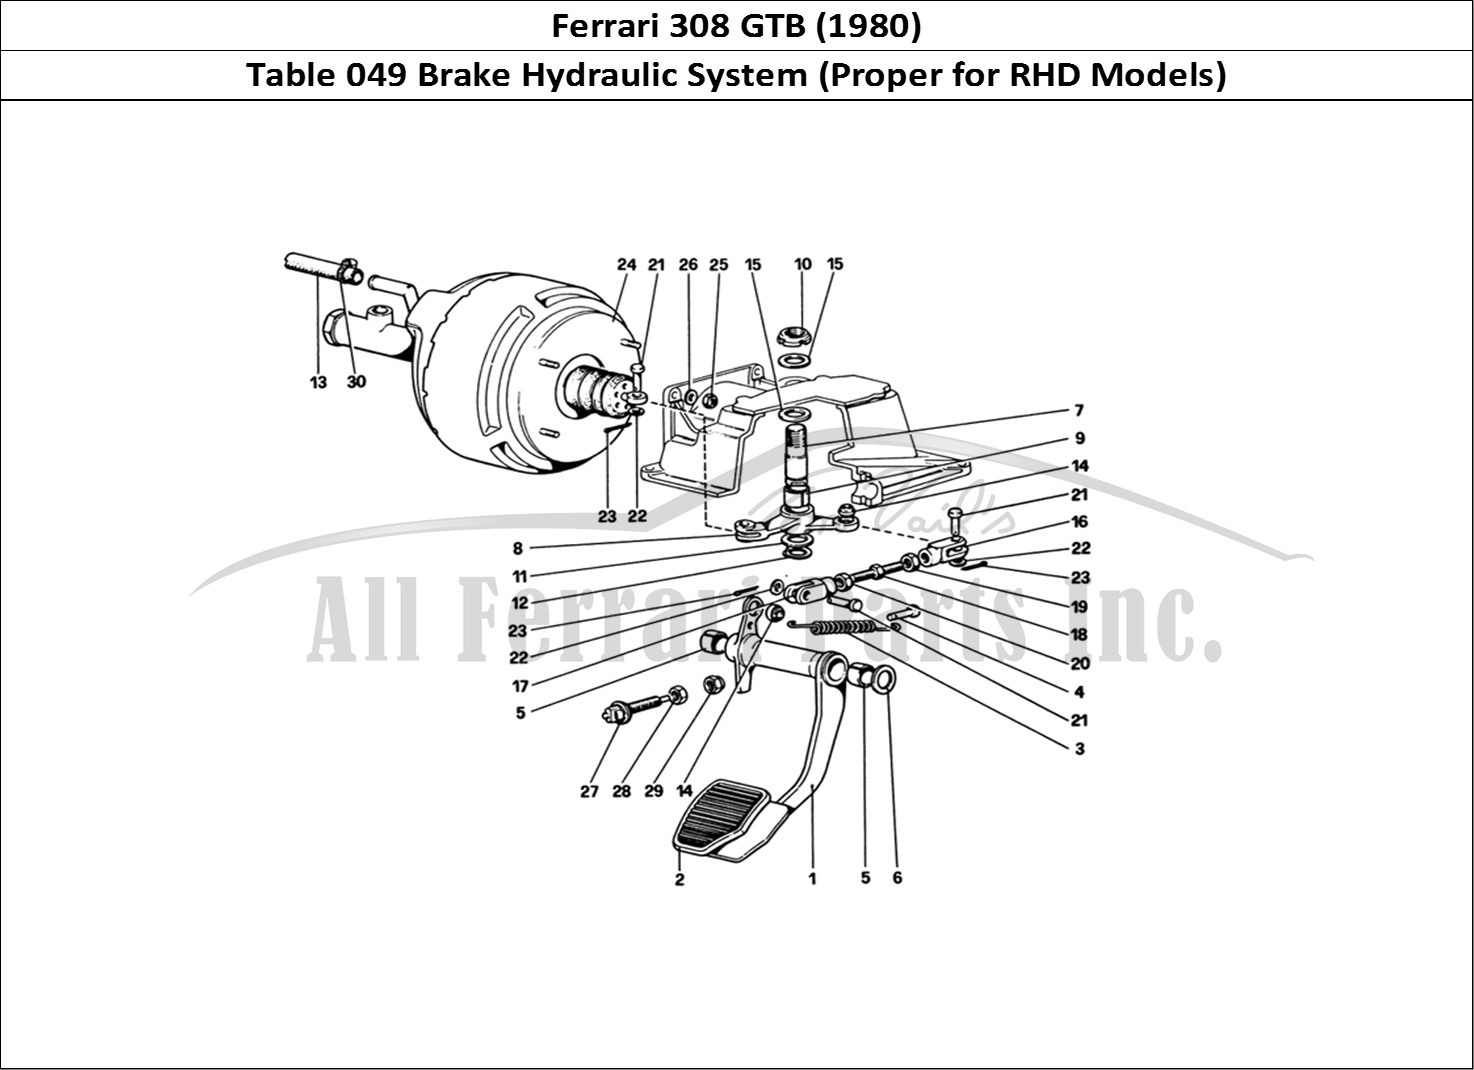 Ferrari Parts Ferrari 308 GTB (1980) Page 049 Brake Hydraulic System (V